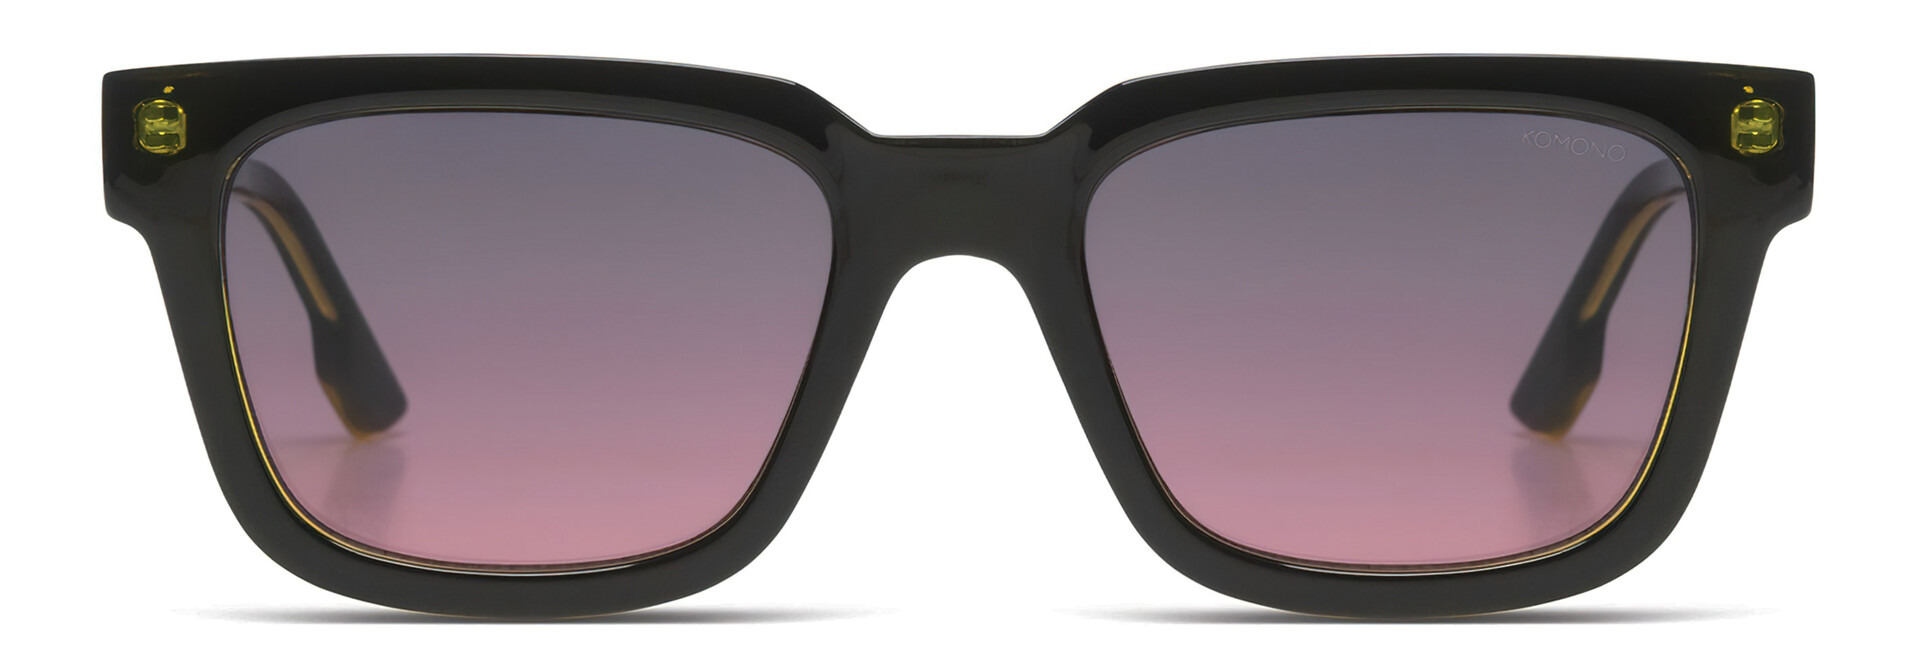 ♣ Bobby Matrix Sunglasses